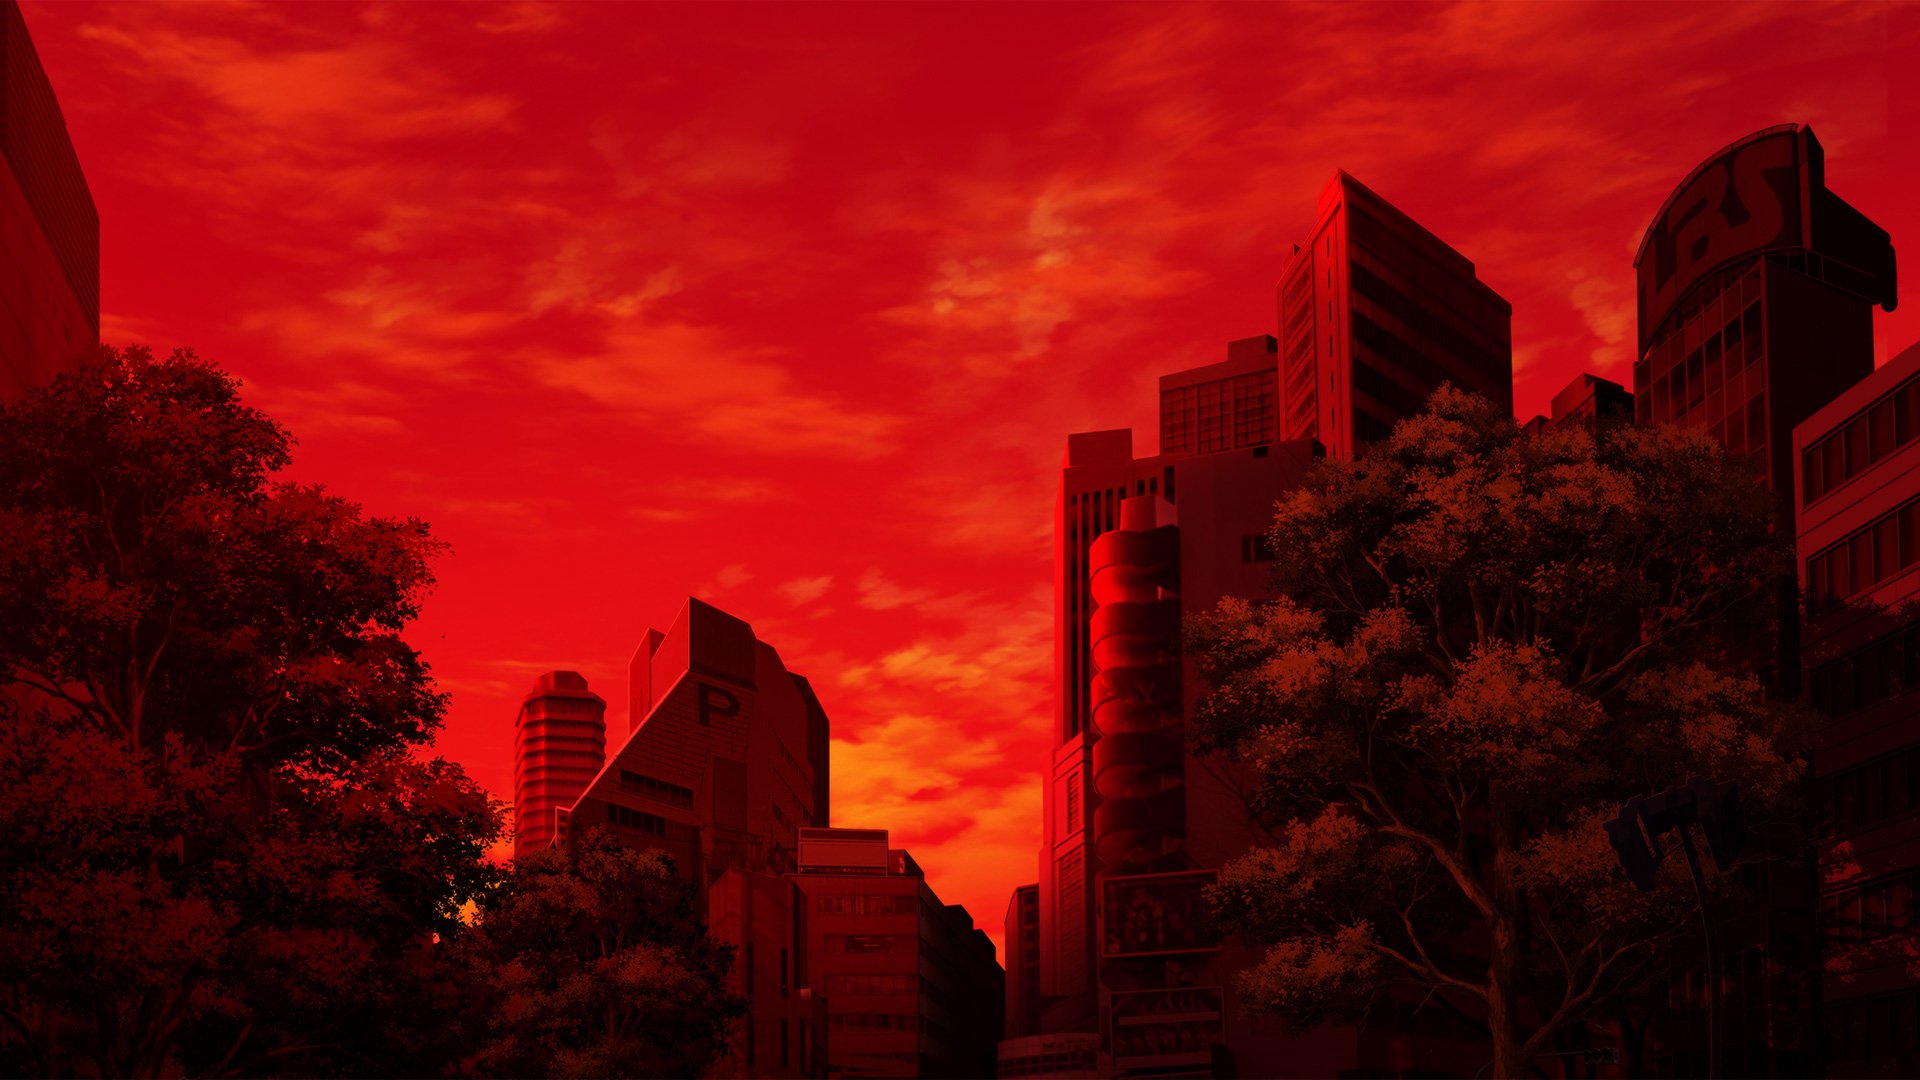 Red Anime Landscape – quang cảnh đỏ rực trong Anime, tạo ra một không gian đầy tính chất thơ mộng và lãng mạn. Đón xem hình ảnh này và cảm nhận sự đẹp mê hoặc của Anime nhé!